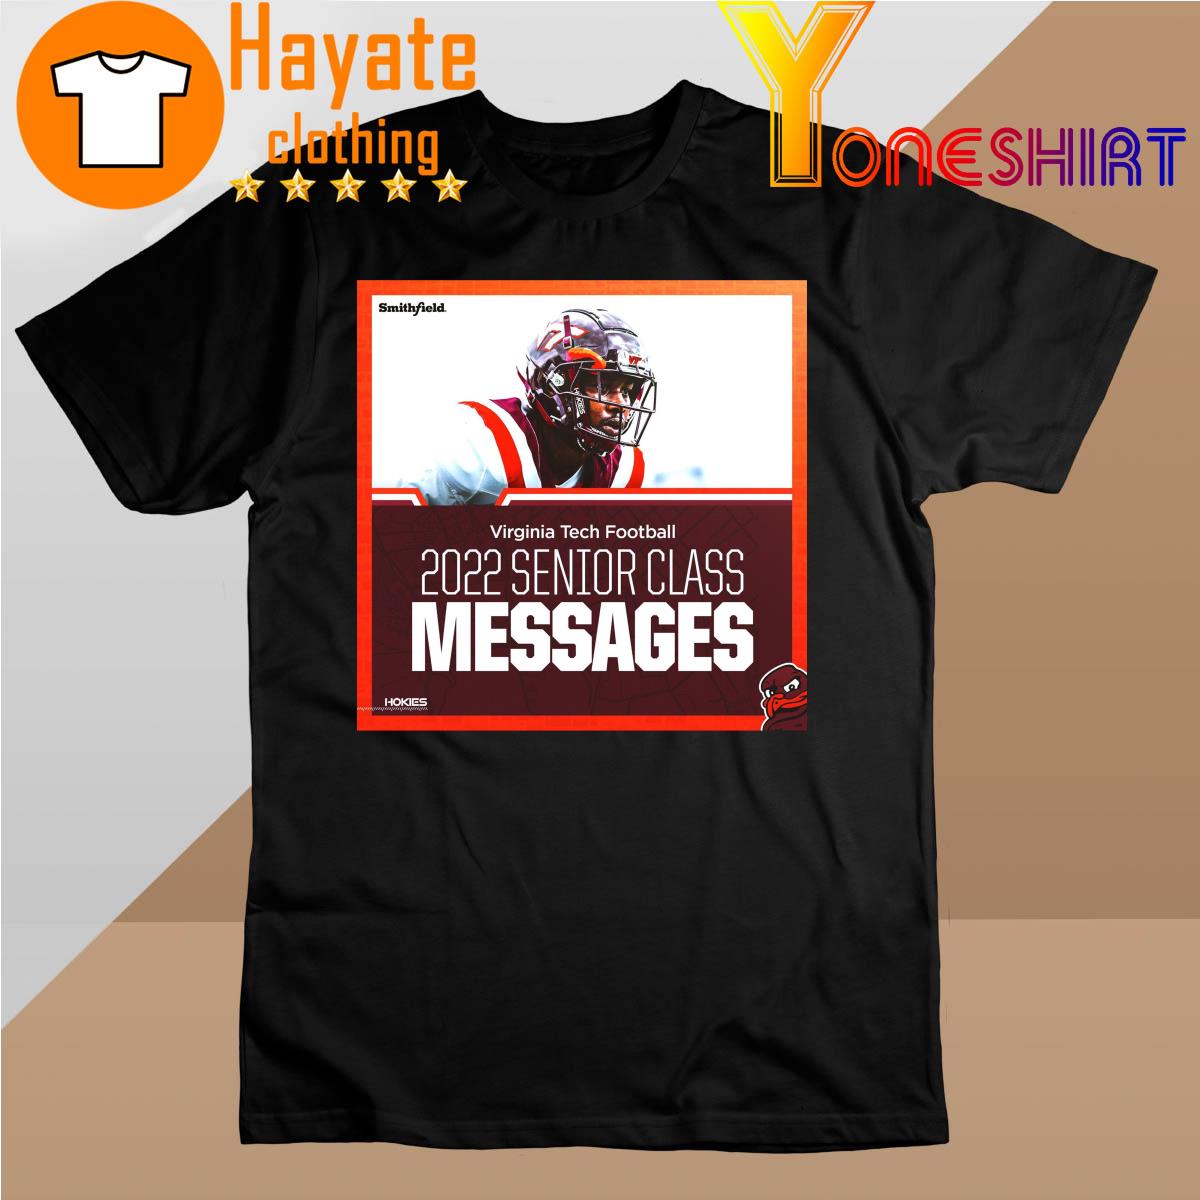 Virginia Tech Football 2022 Senior Class Messages shirt